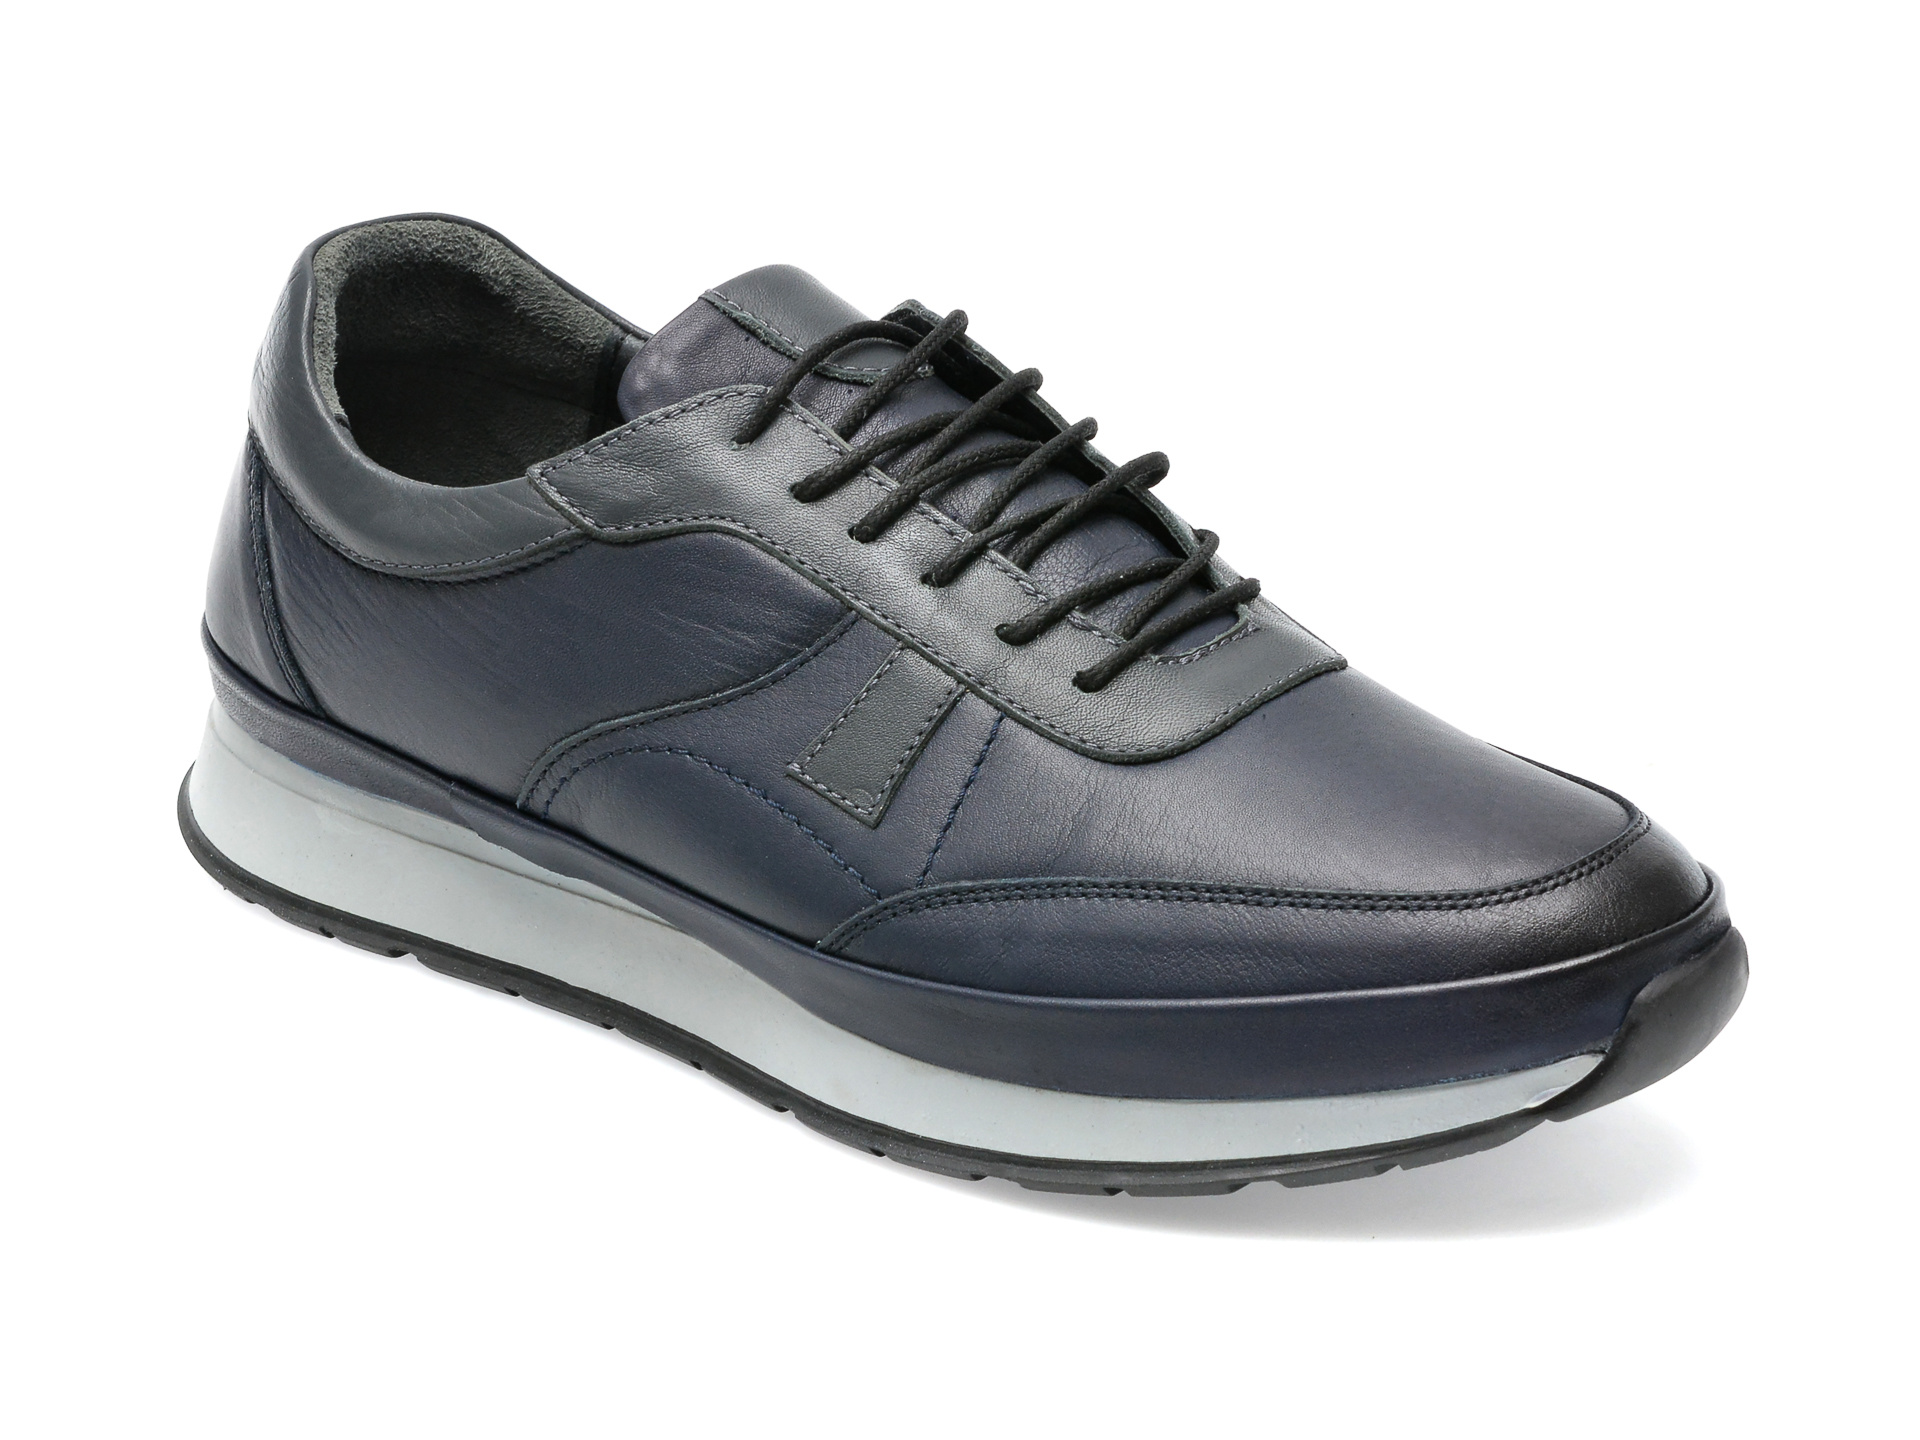 Pantofi AXXELLL bleumarin, SY303, din piele naturala /barbati/pantofi